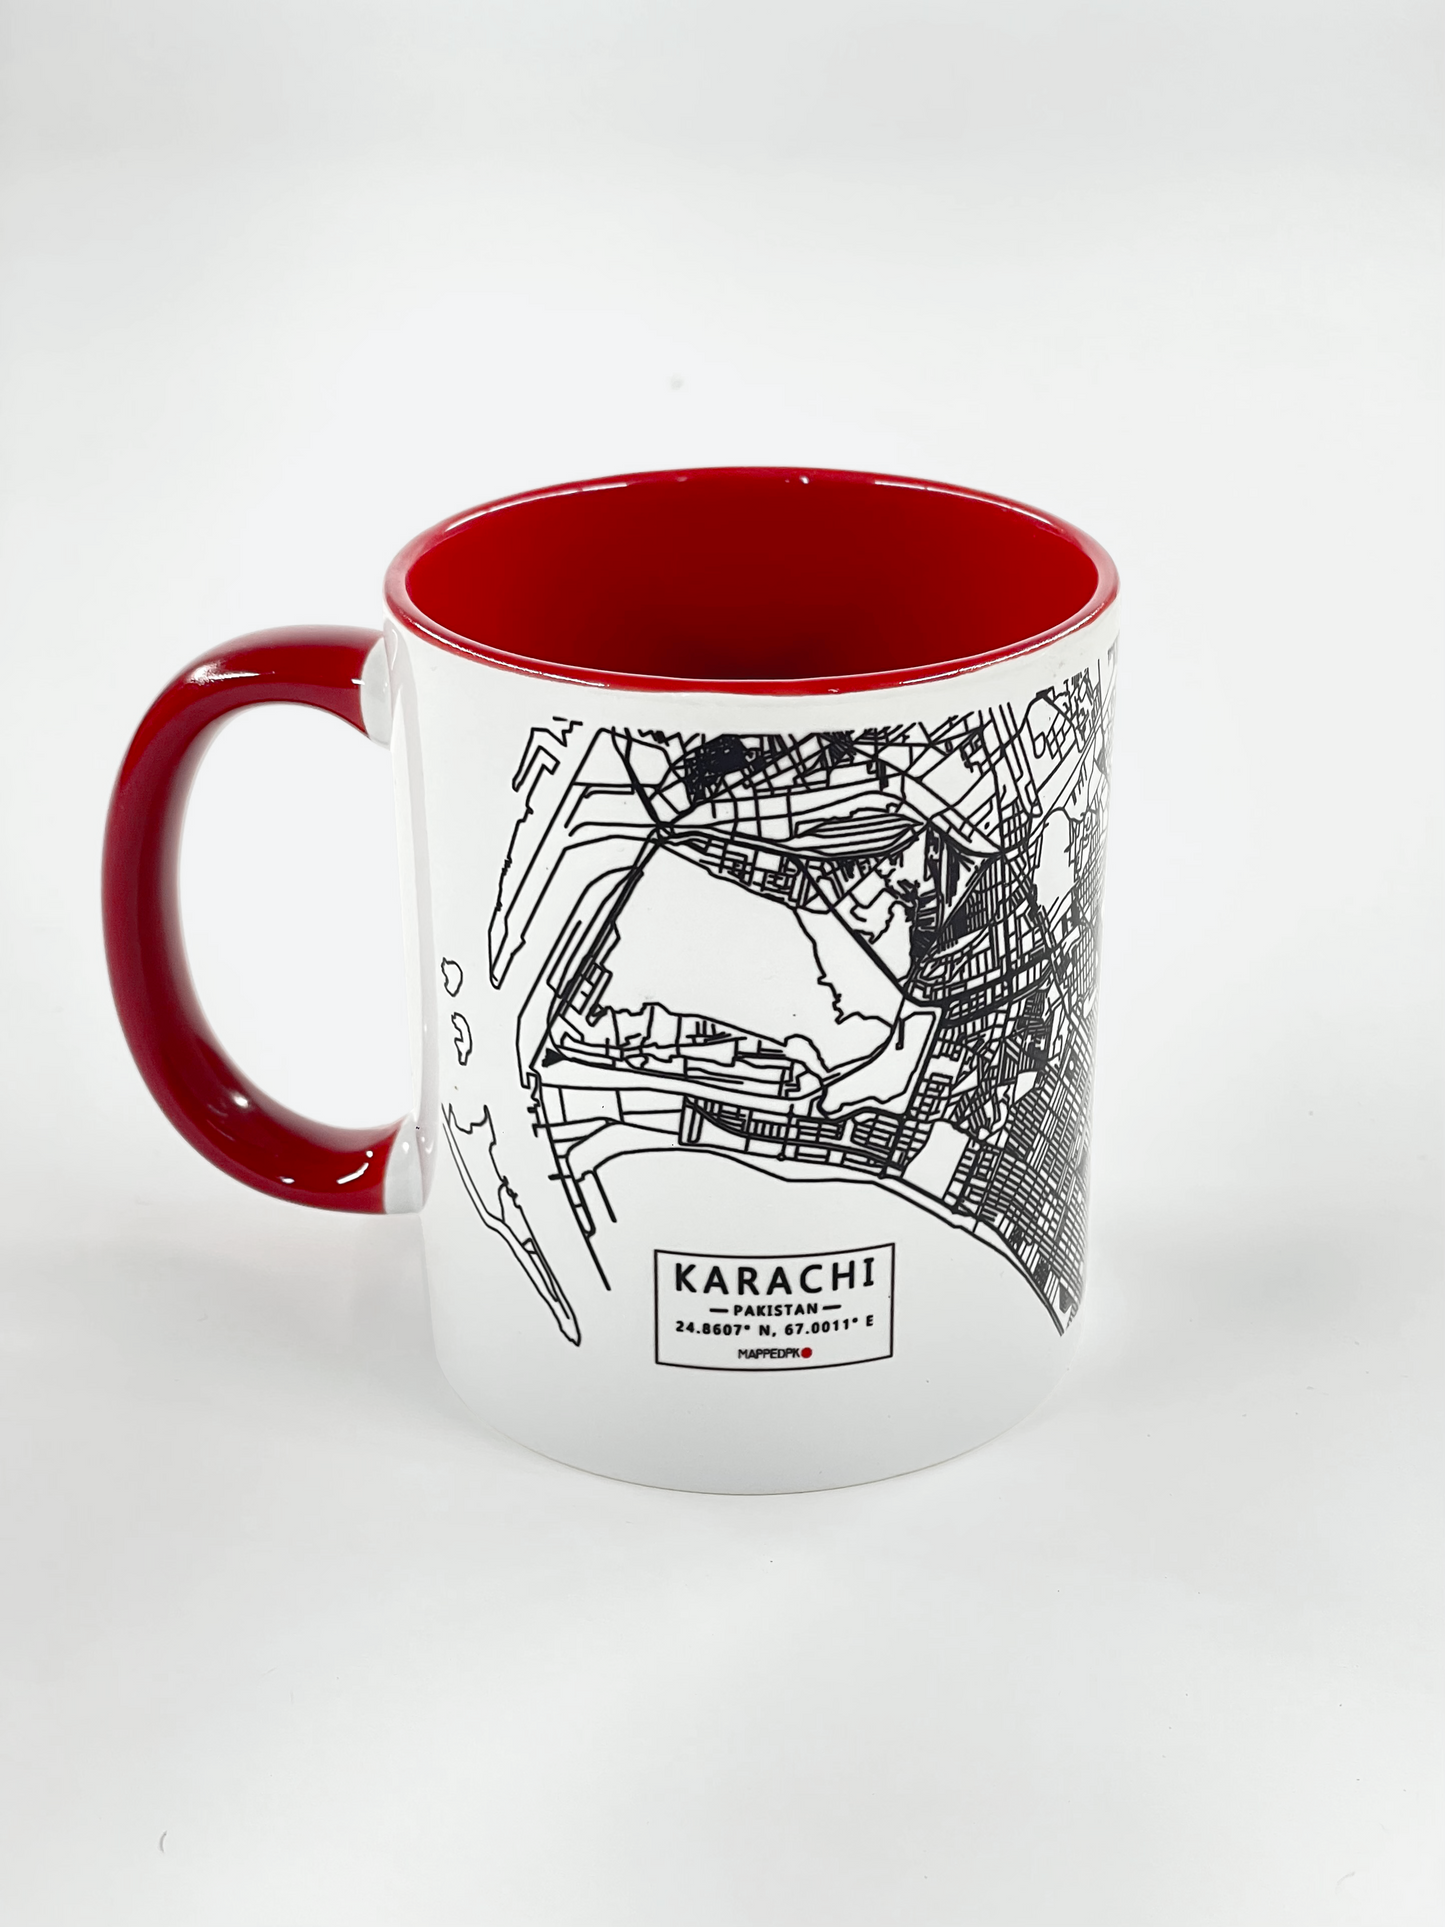 Karachi - Mapped Mugs